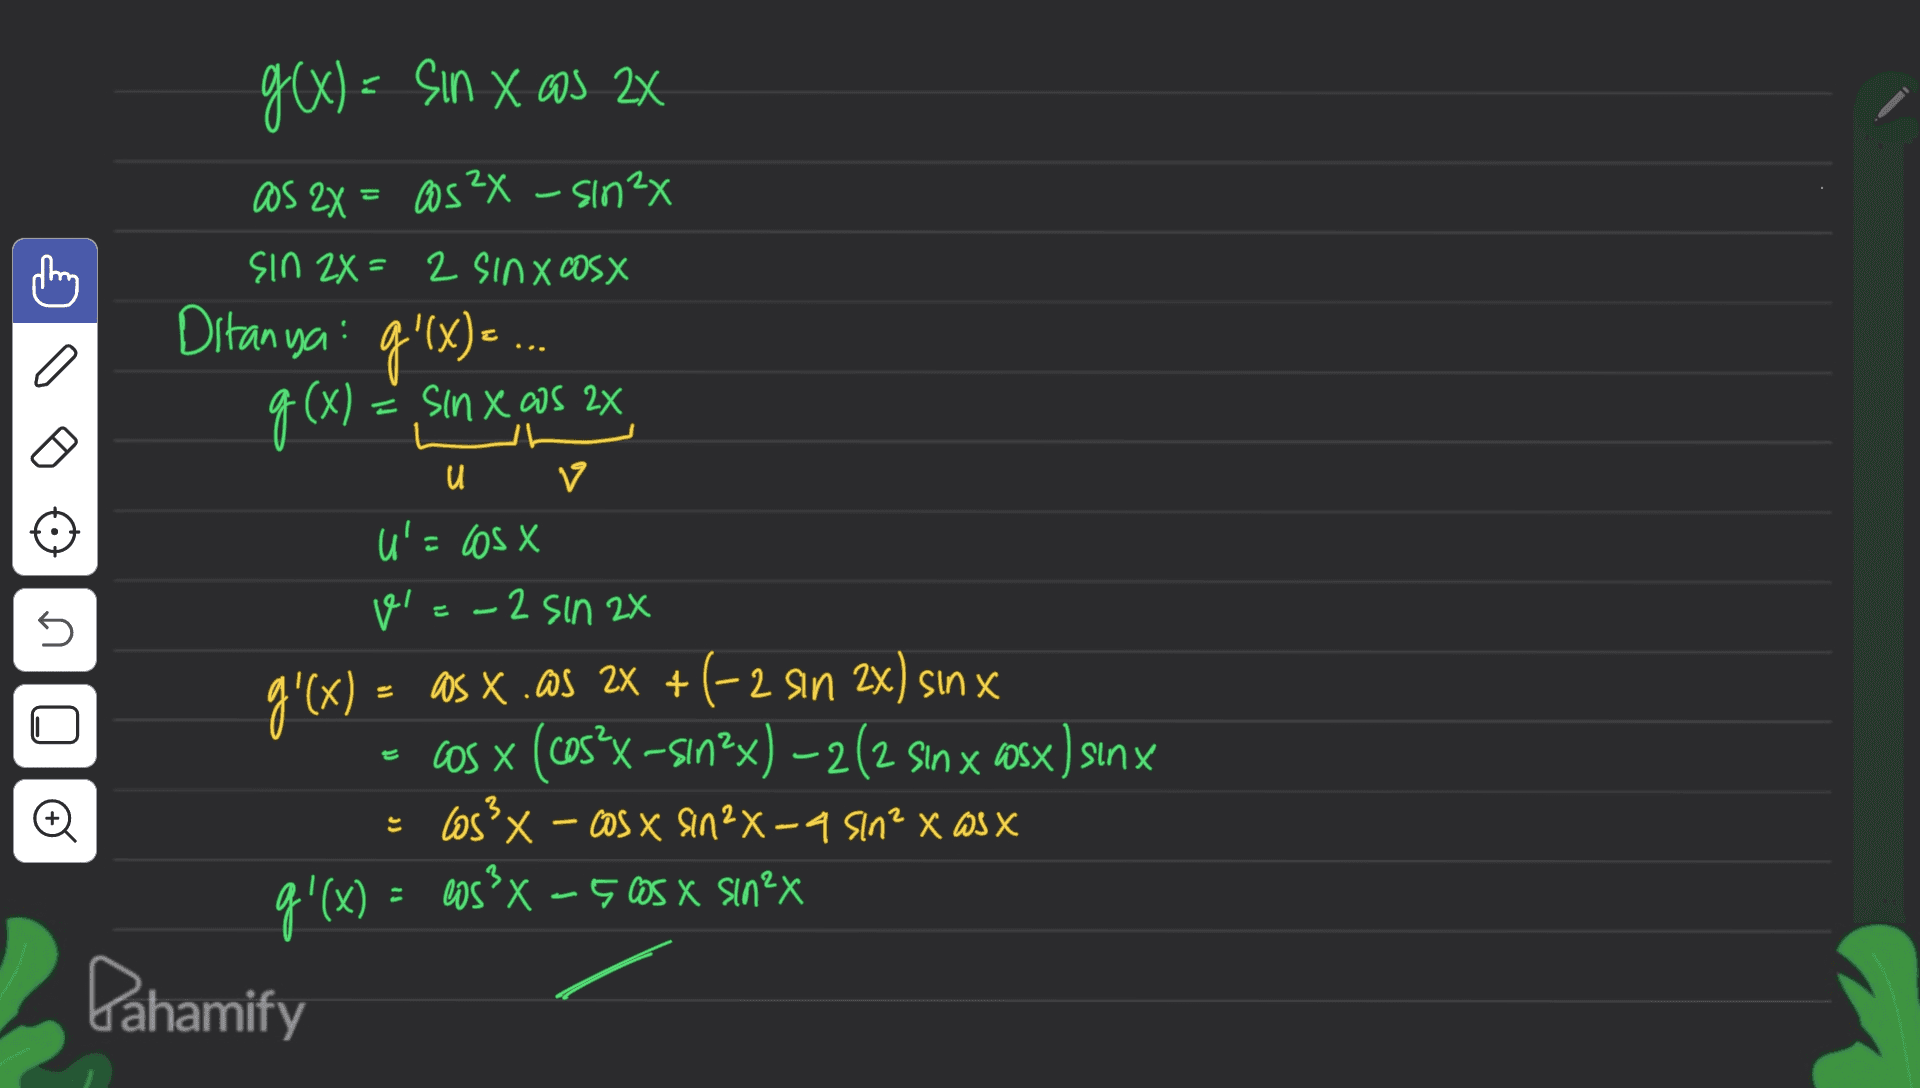 g(x) = sin X os 2X as 2X = 0s 24 - sinx Sin 2X= 2 SINX Cosx Ditanya: g'(x) = ... o 5 g(x) = sin xaos 2x x 2x u v u'= los x v E - 2 - 2 sin 2x g'(x) = 2x as x. as 2X + (-2 sin 2x) sinx cOS X (cos?X –sın?x) – 2 (2 Sin x cosx) sinx = x 4 ? x X los X - cosx Sin 2-a sln² X Wsx g'(x) = cos x – 5 cos x sinex ? Pahamify تع 는 - 9 